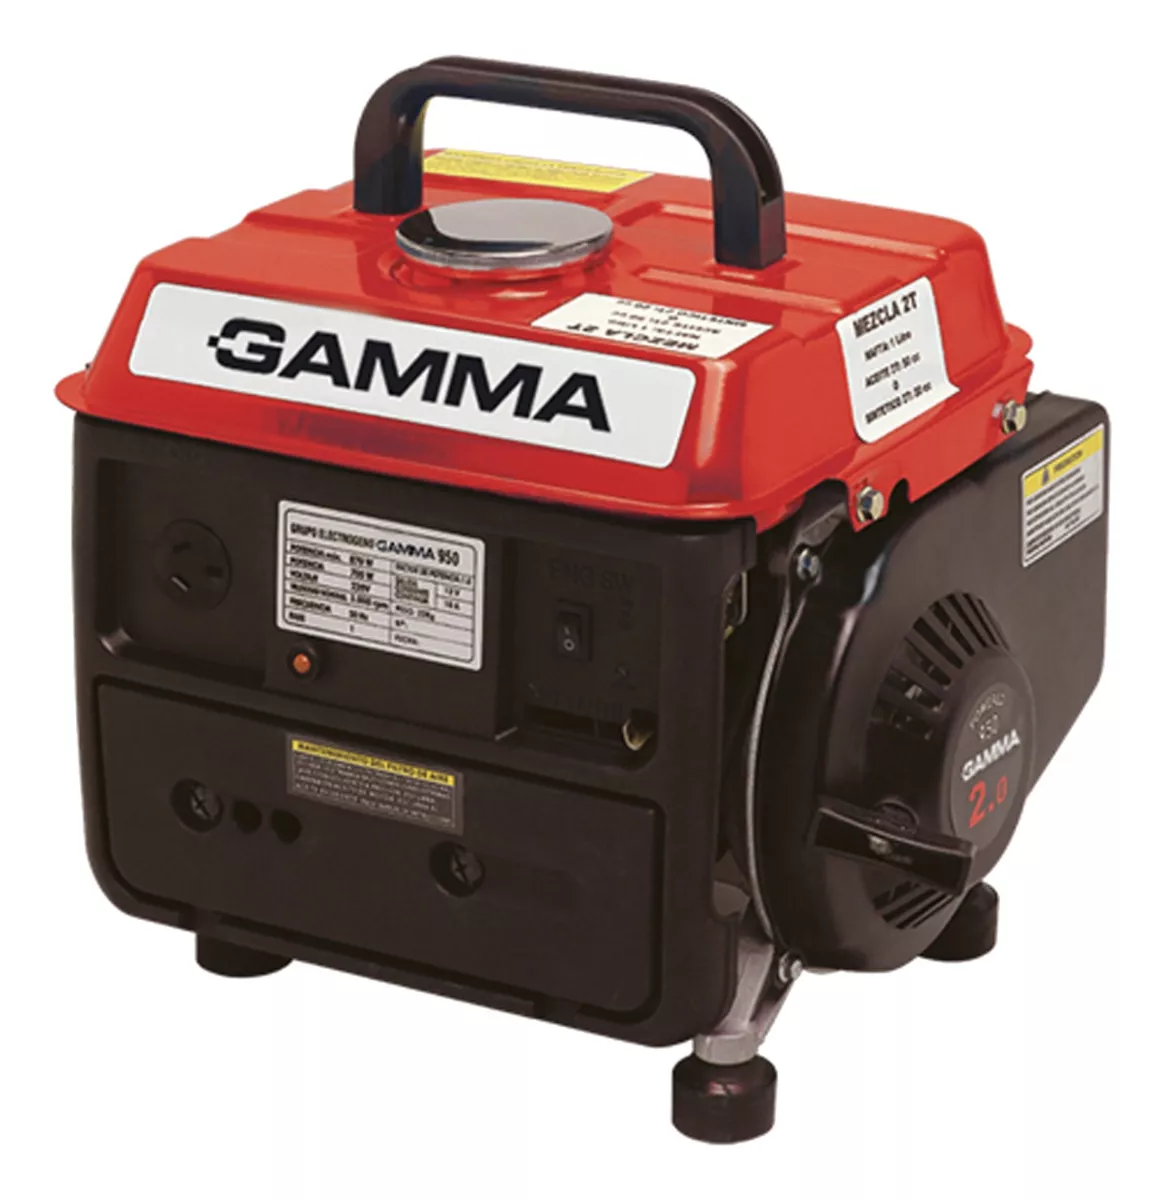 Generador Portátil Gamma Máquinas Ge3441ar 870w Monofásico 220v